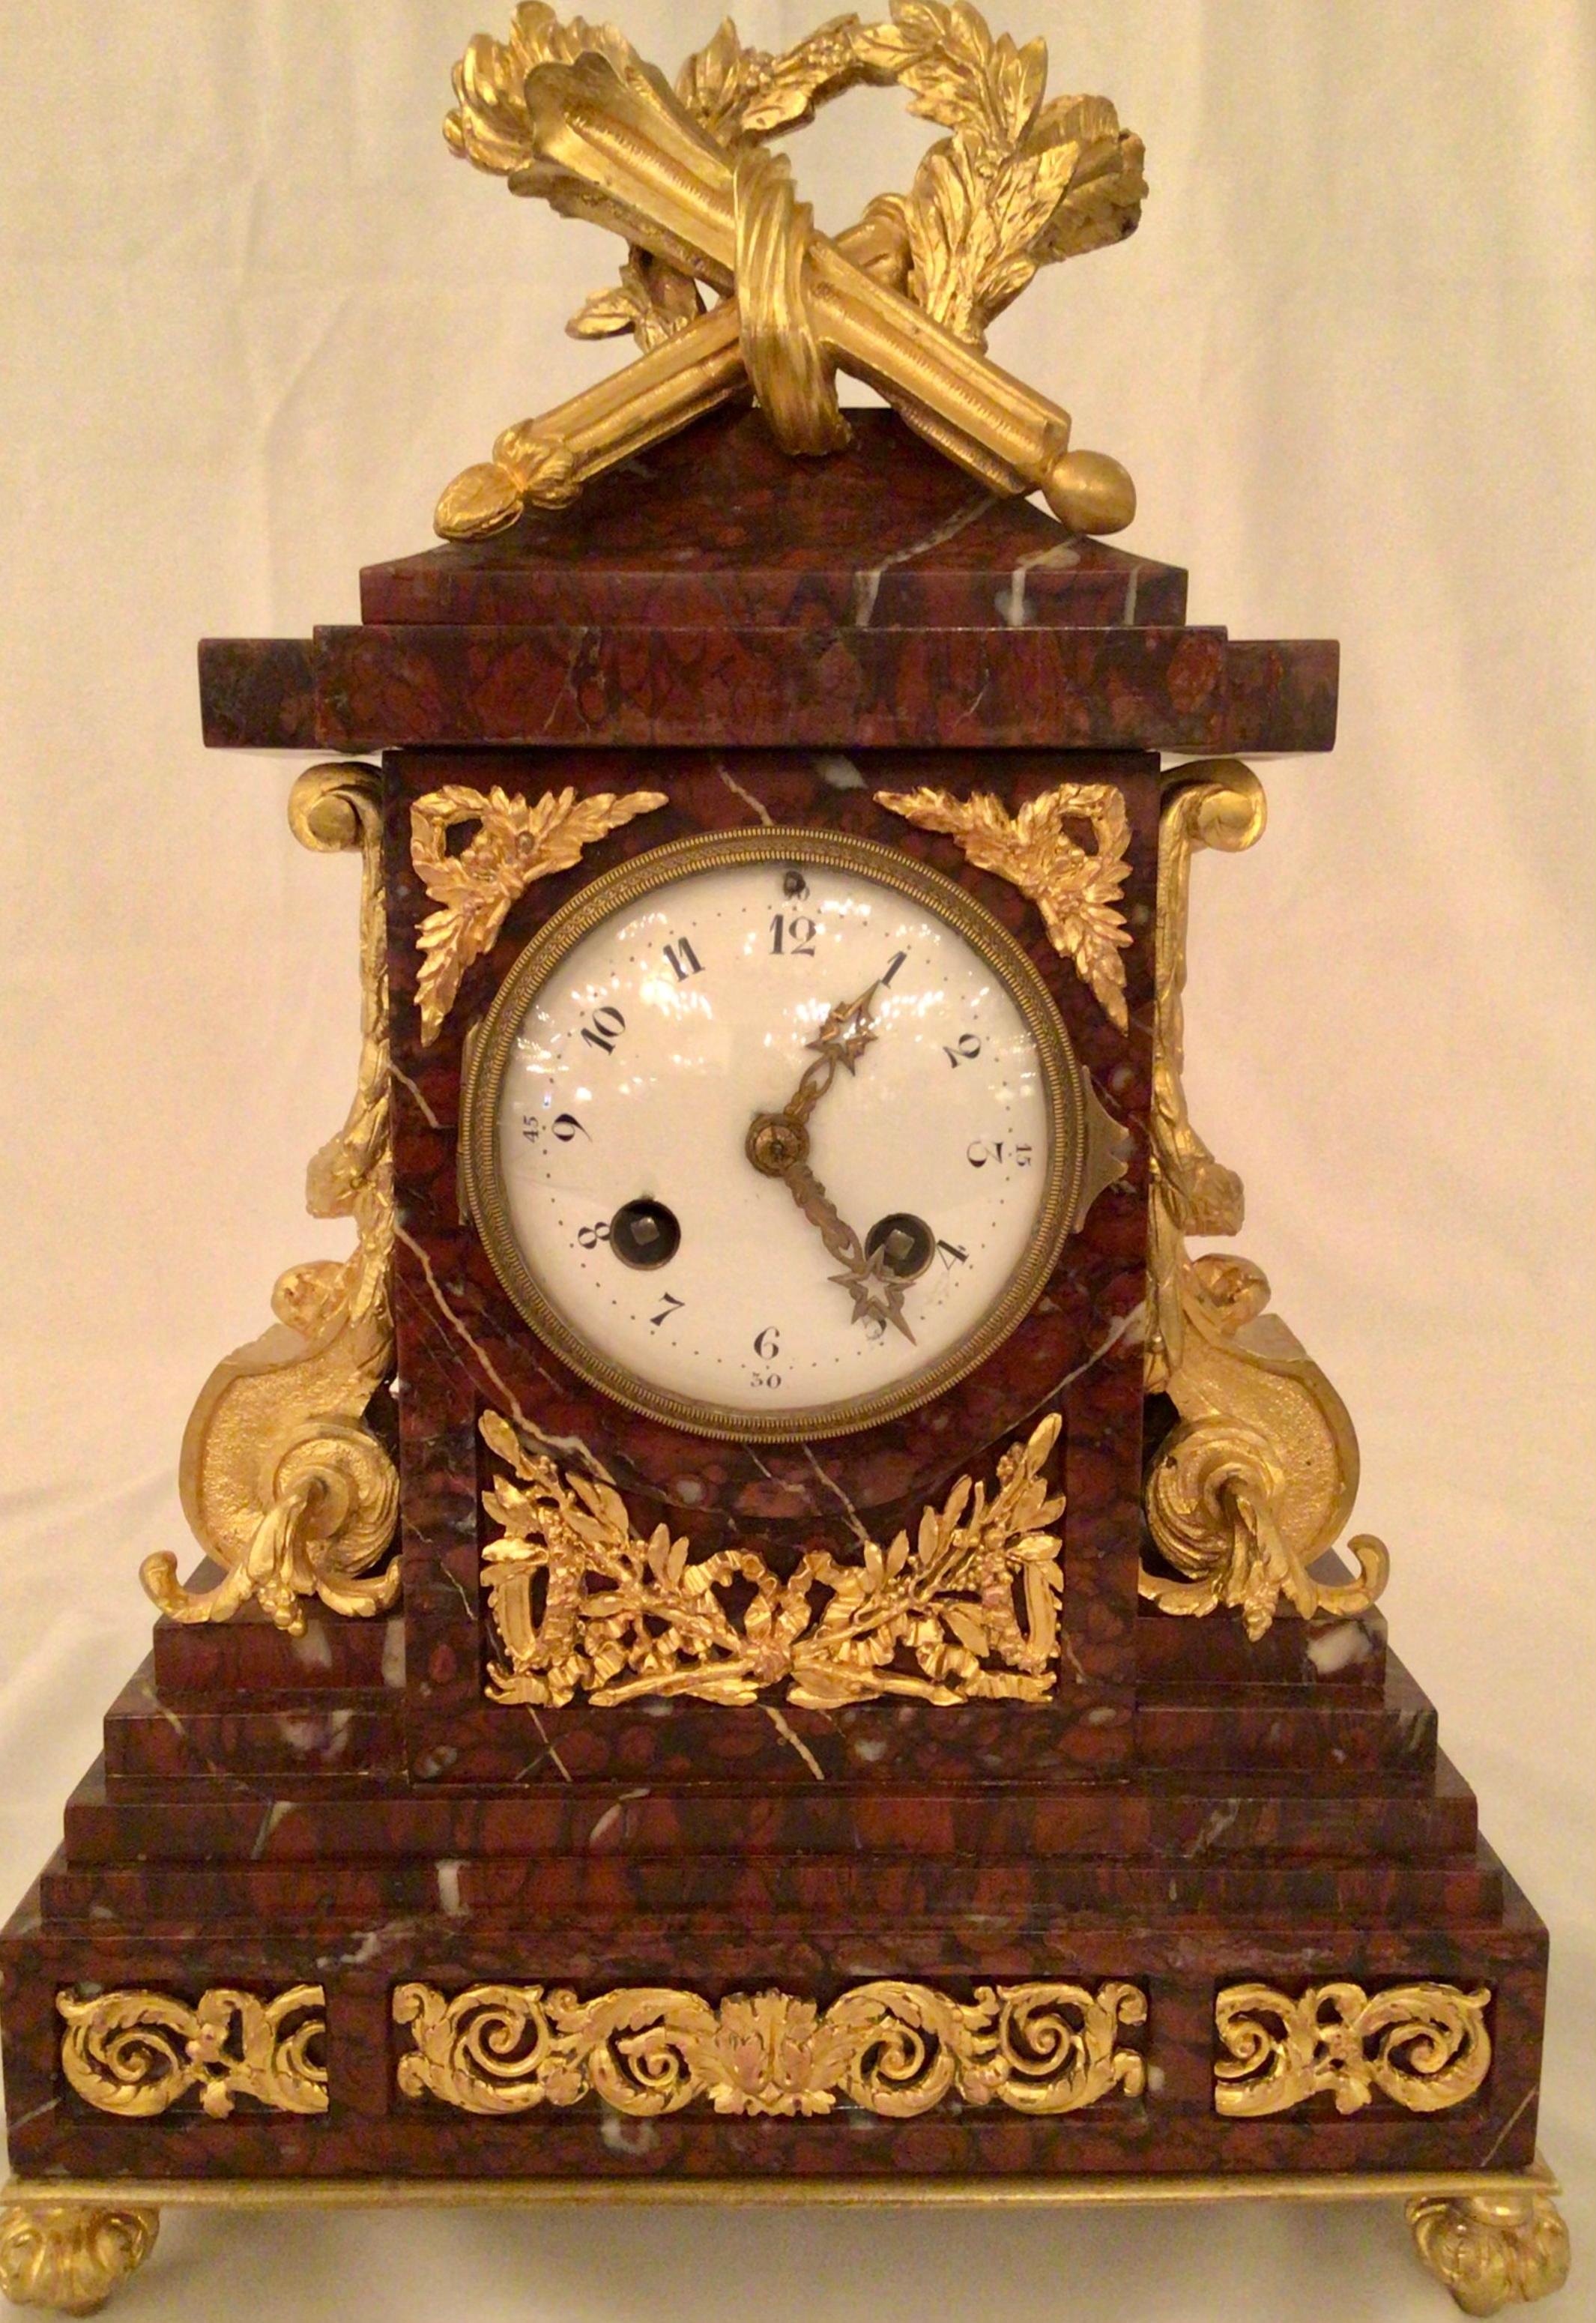 Antike französische Ormolu-Uhr und Kerzenständer aus Vatikan-Rouge-Marmor, um 1875-1885, von erlesener Qualität

Uhr misst 15